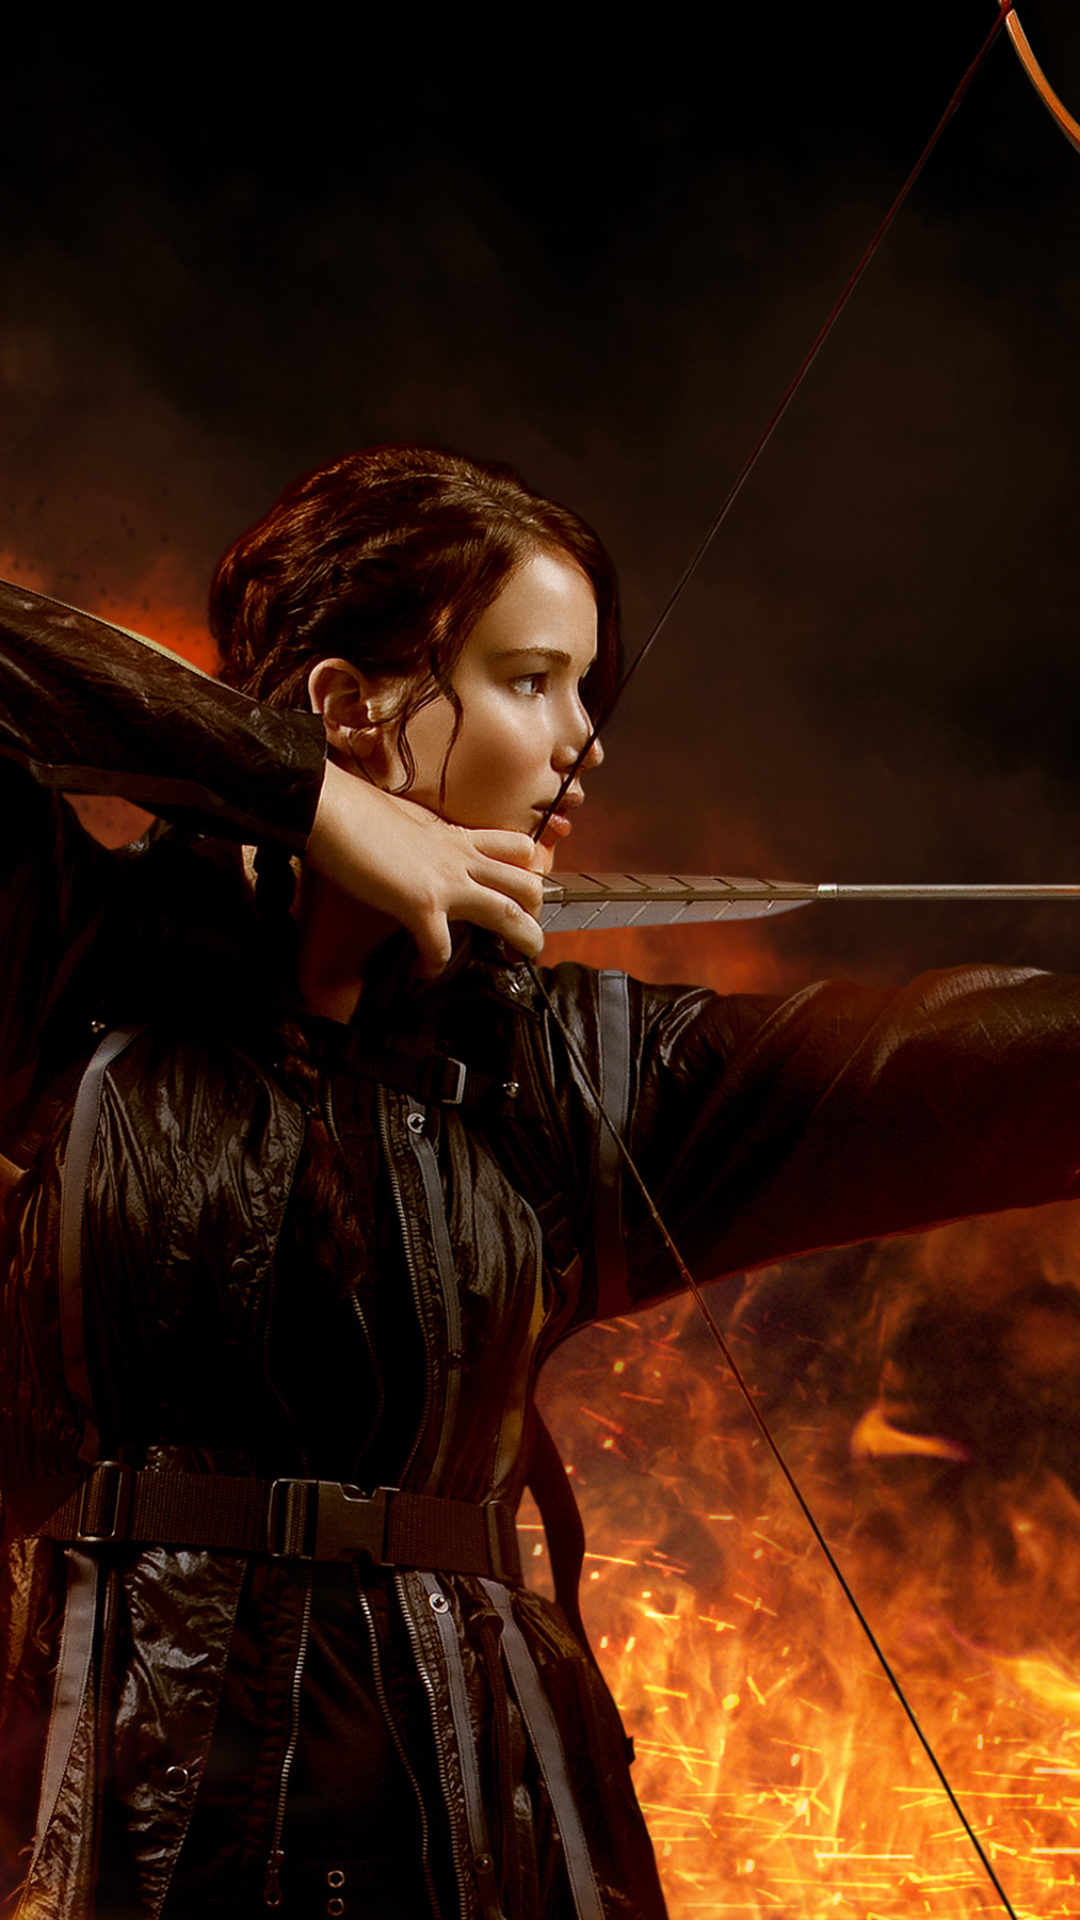 Hunger Games Katniss Catching Fire , HD Wallpaper & Backgrounds